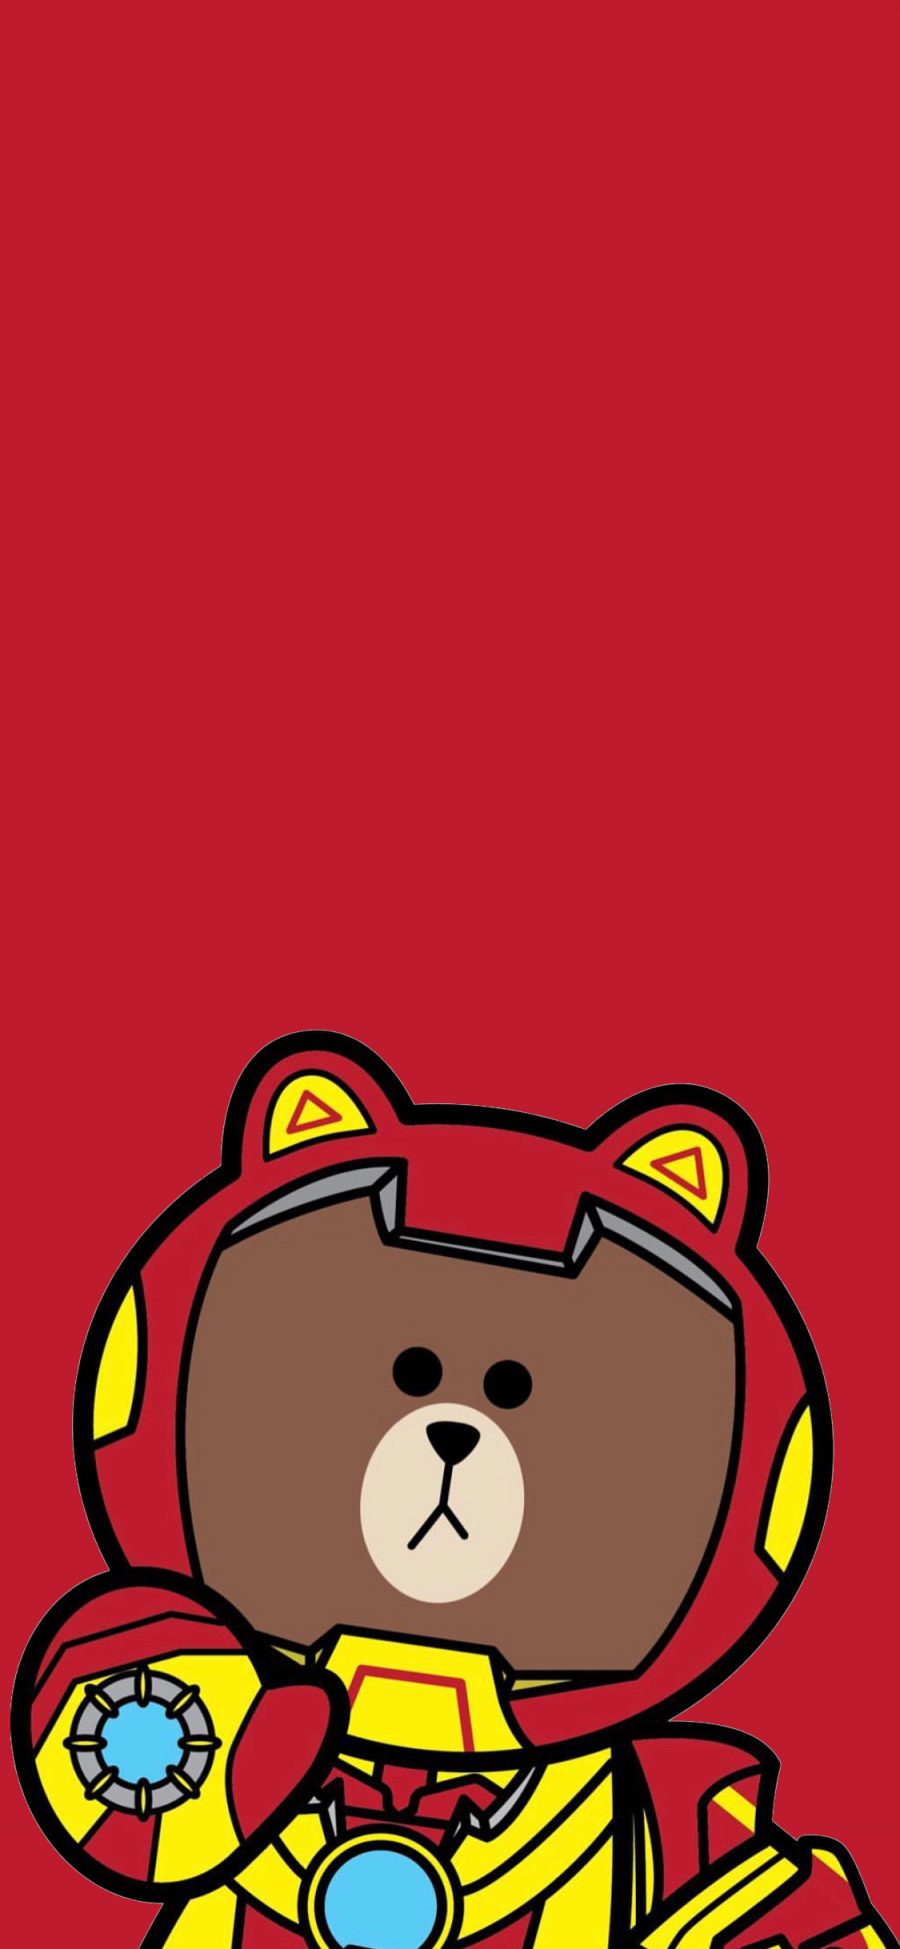 [2436×1125]布朗熊 line friends 卡通 钢铁侠 红色 苹果手机动漫壁纸图片